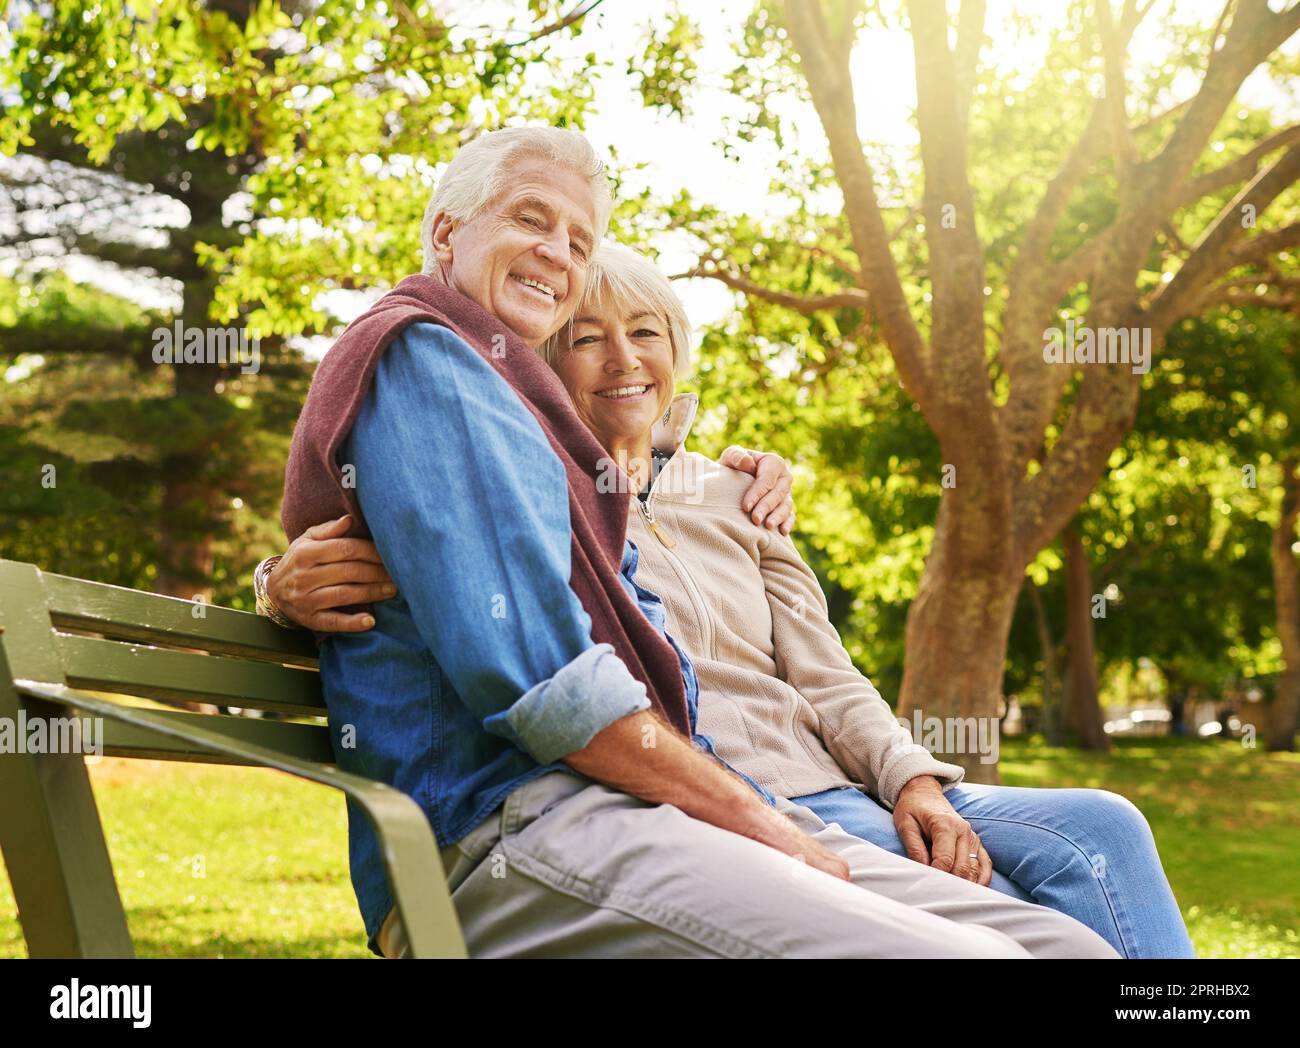 La relaxation commence maintenant. Portrait d'un couple senior heureux se reposant sur un banc de parc. Banque D'Images